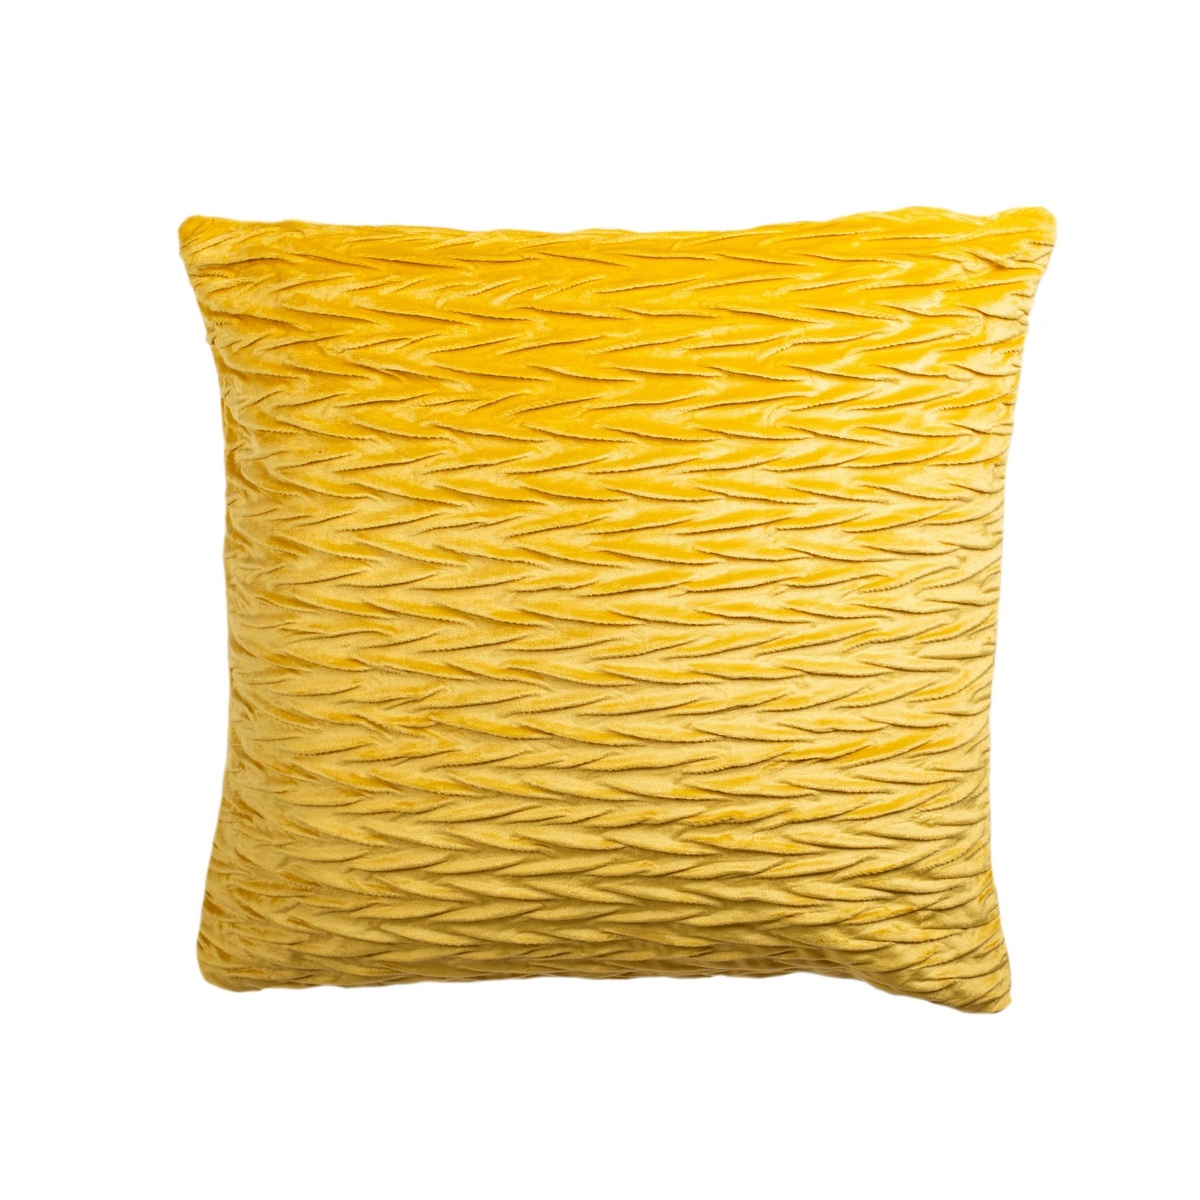 Jahu Povlak na polštářek Mia žlutá, 40 x 40 cm